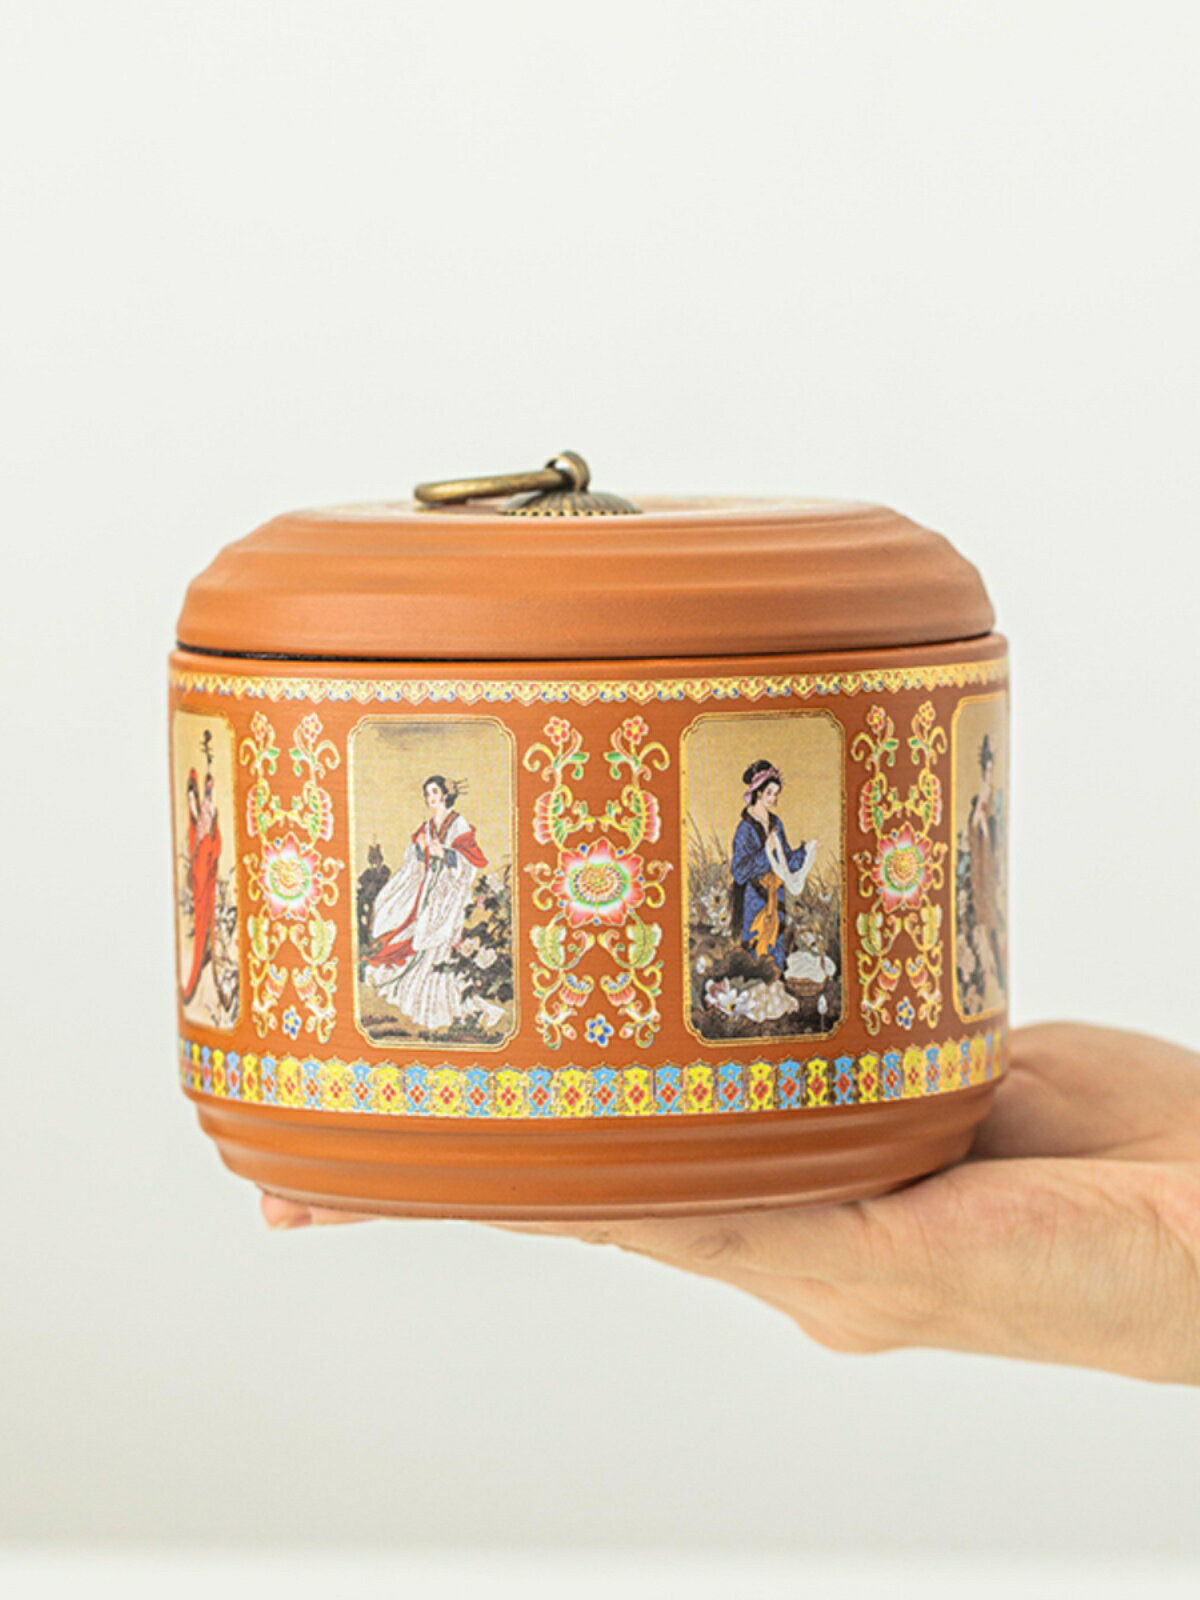 紫砂茶葉罐半斤裝陶瓷普洱醒茶罐干果密封罐小號家用儲物罐收納盒